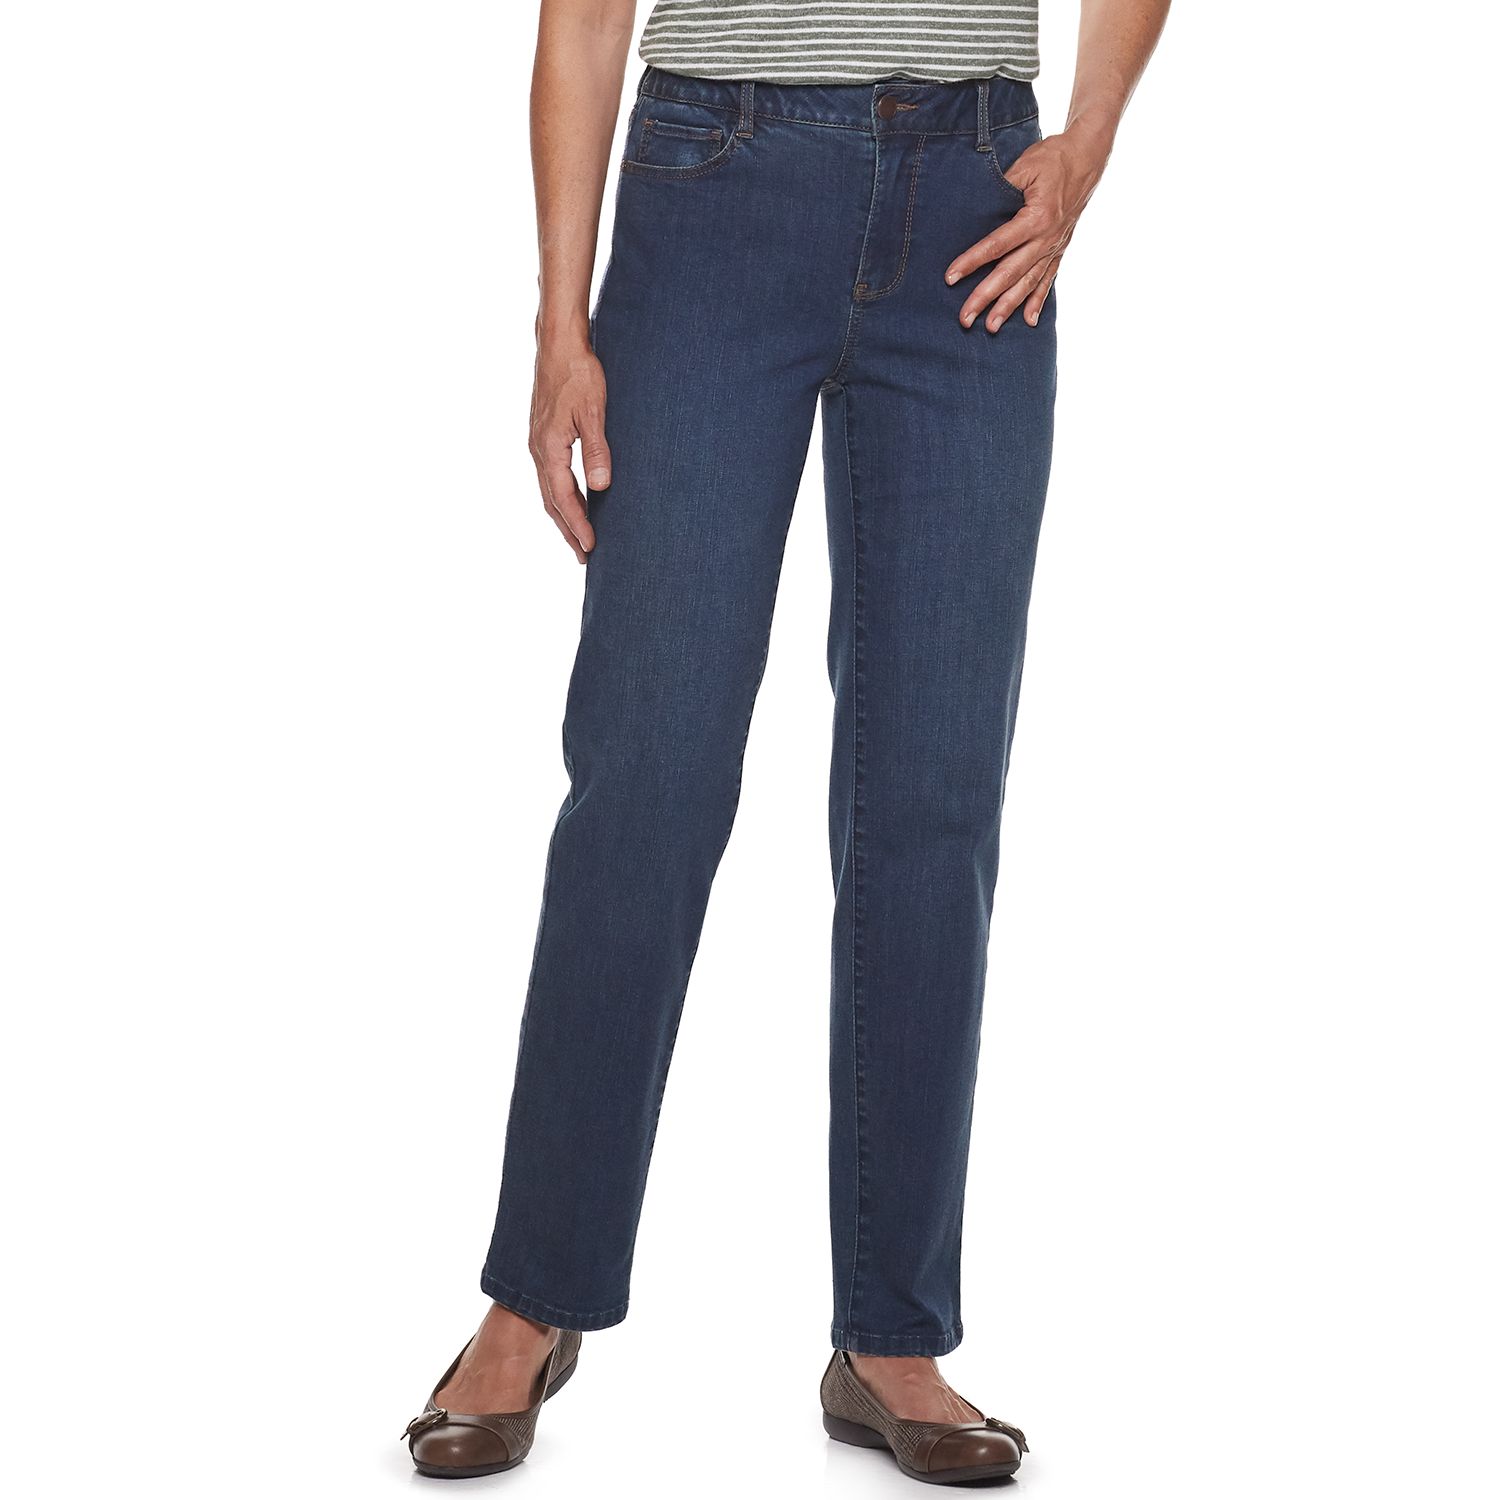 croft and barrow elastic waist jeans